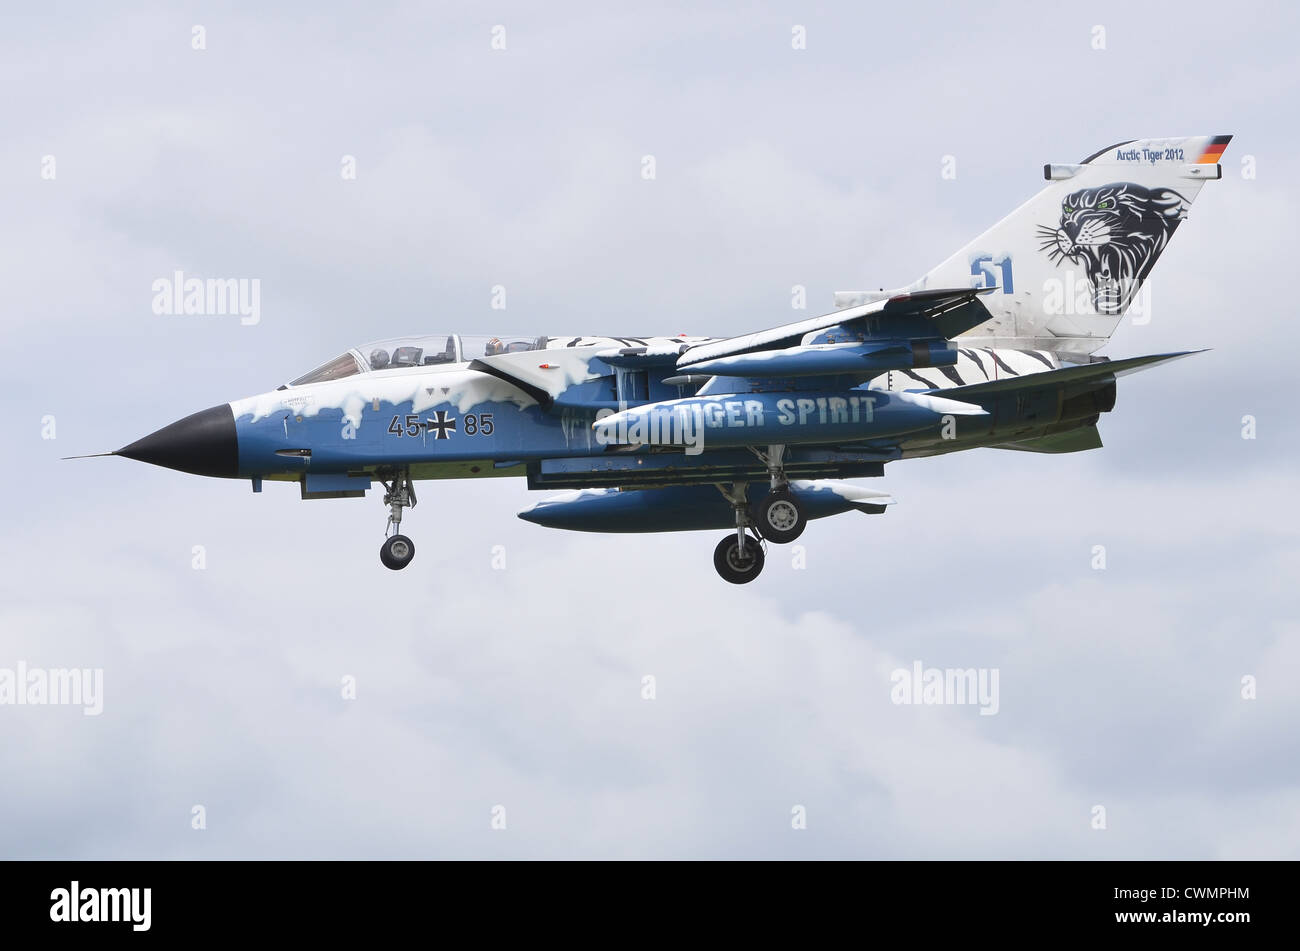 Panavia Tornado IDS dans Arctic Tiger 2012 marquages, exploité par l'aviation allemande, en approche pour l'atterrissage à RAF Fairford Banque D'Images